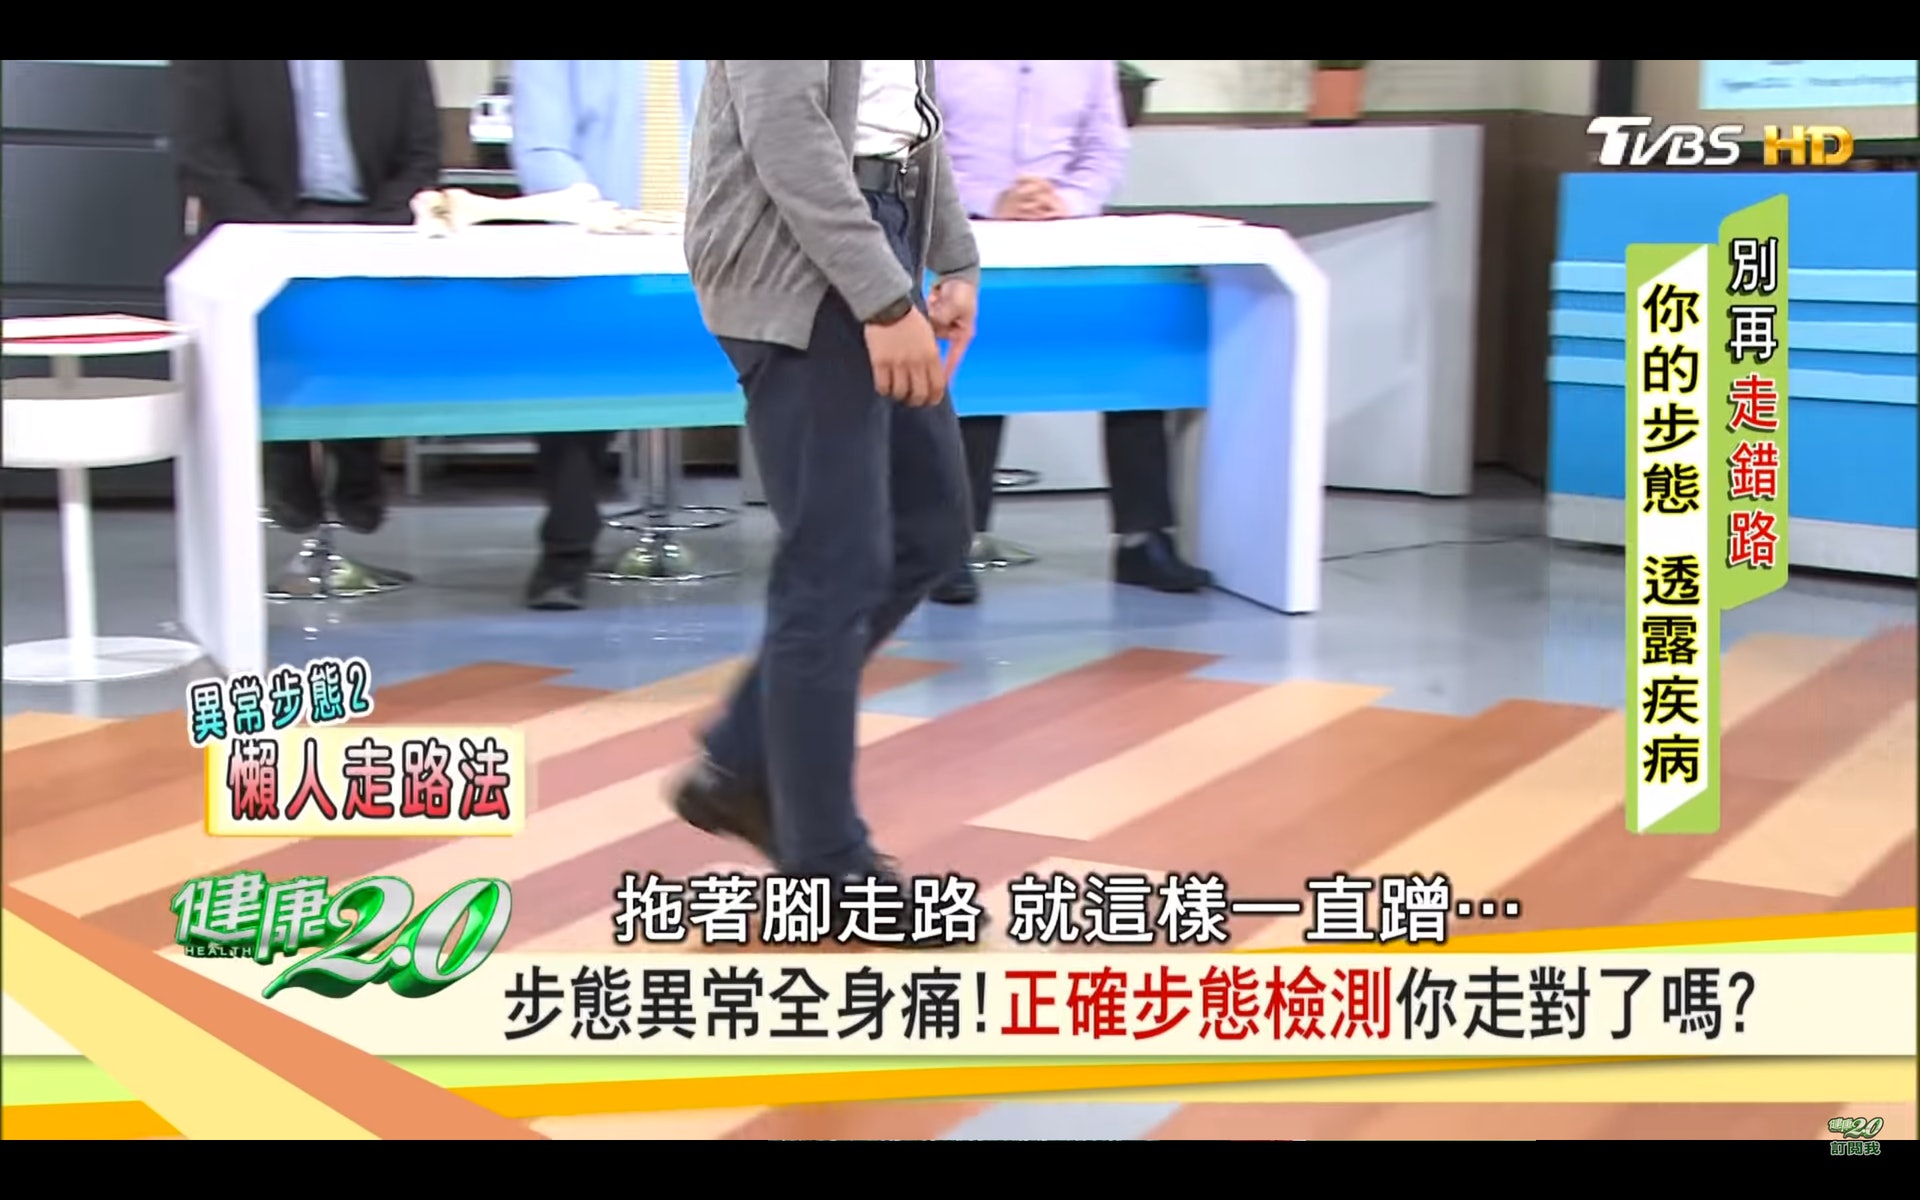 腳無法跨出去，行路拖著腳走（台灣TVBS頻道《健康2.0》截圖）